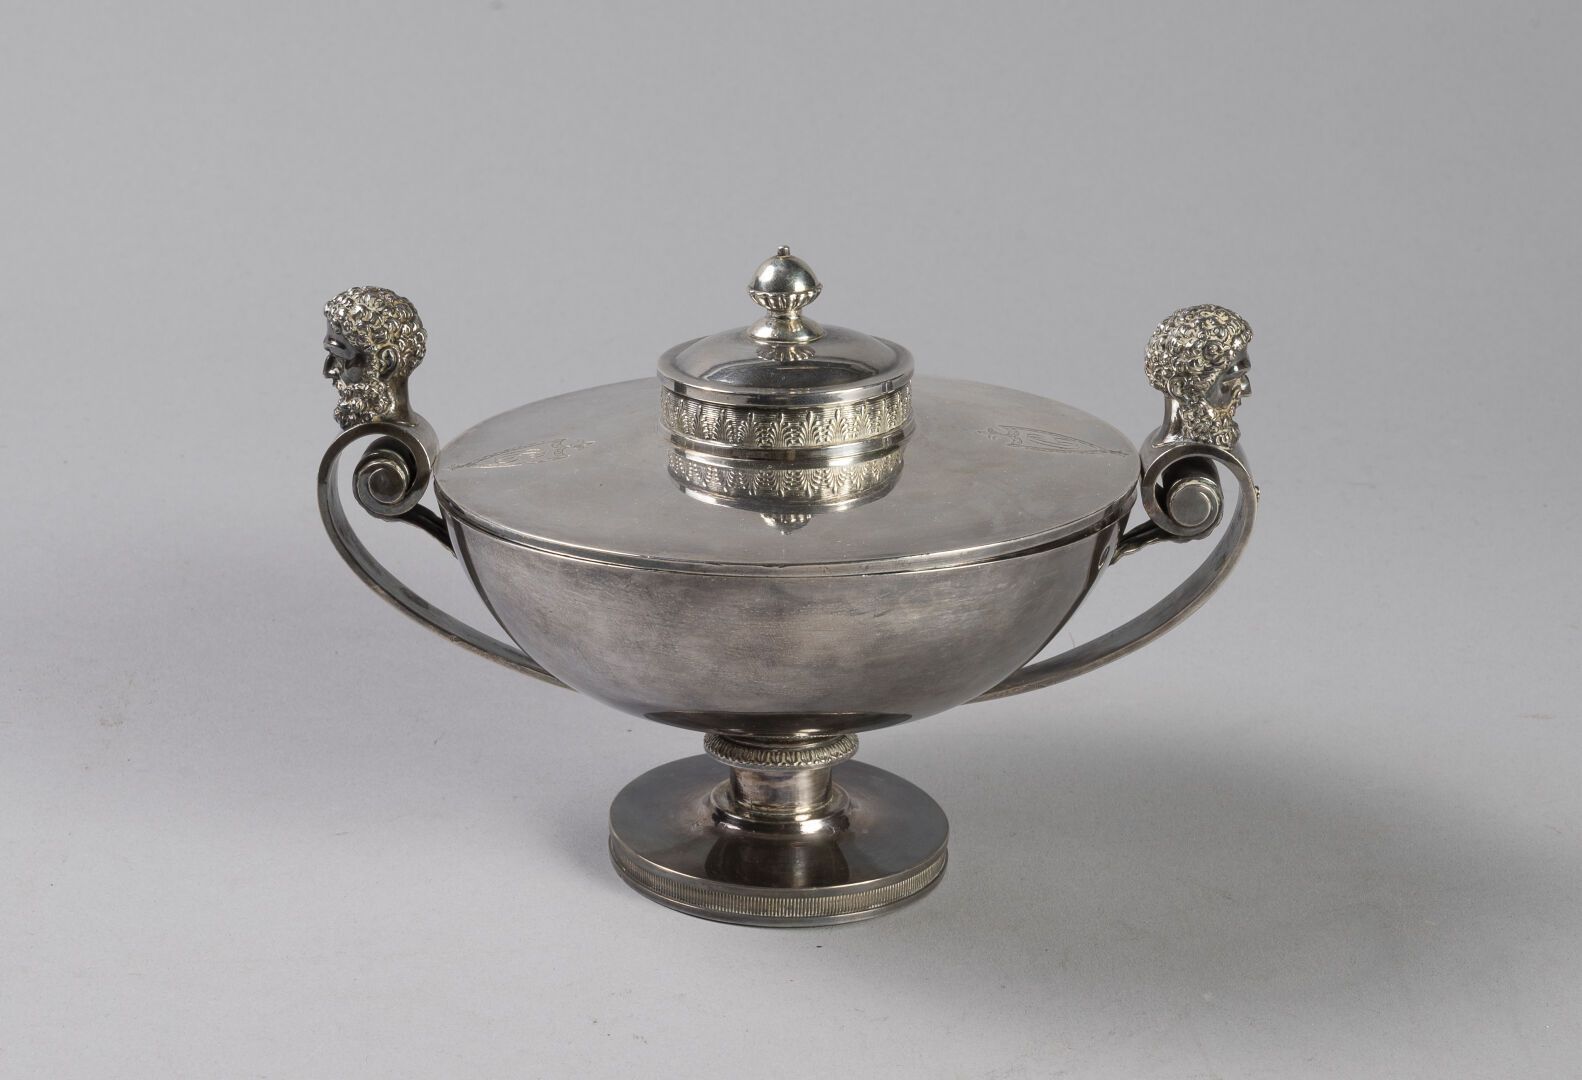 Null 有盖杯在基座上

银质950°/°巴黎Premier Coq 1809-1819年

饰有叶子和凿刻的古式胡须人头的卷轴把手

加密的盖子上装饰着棕榈&hellip;